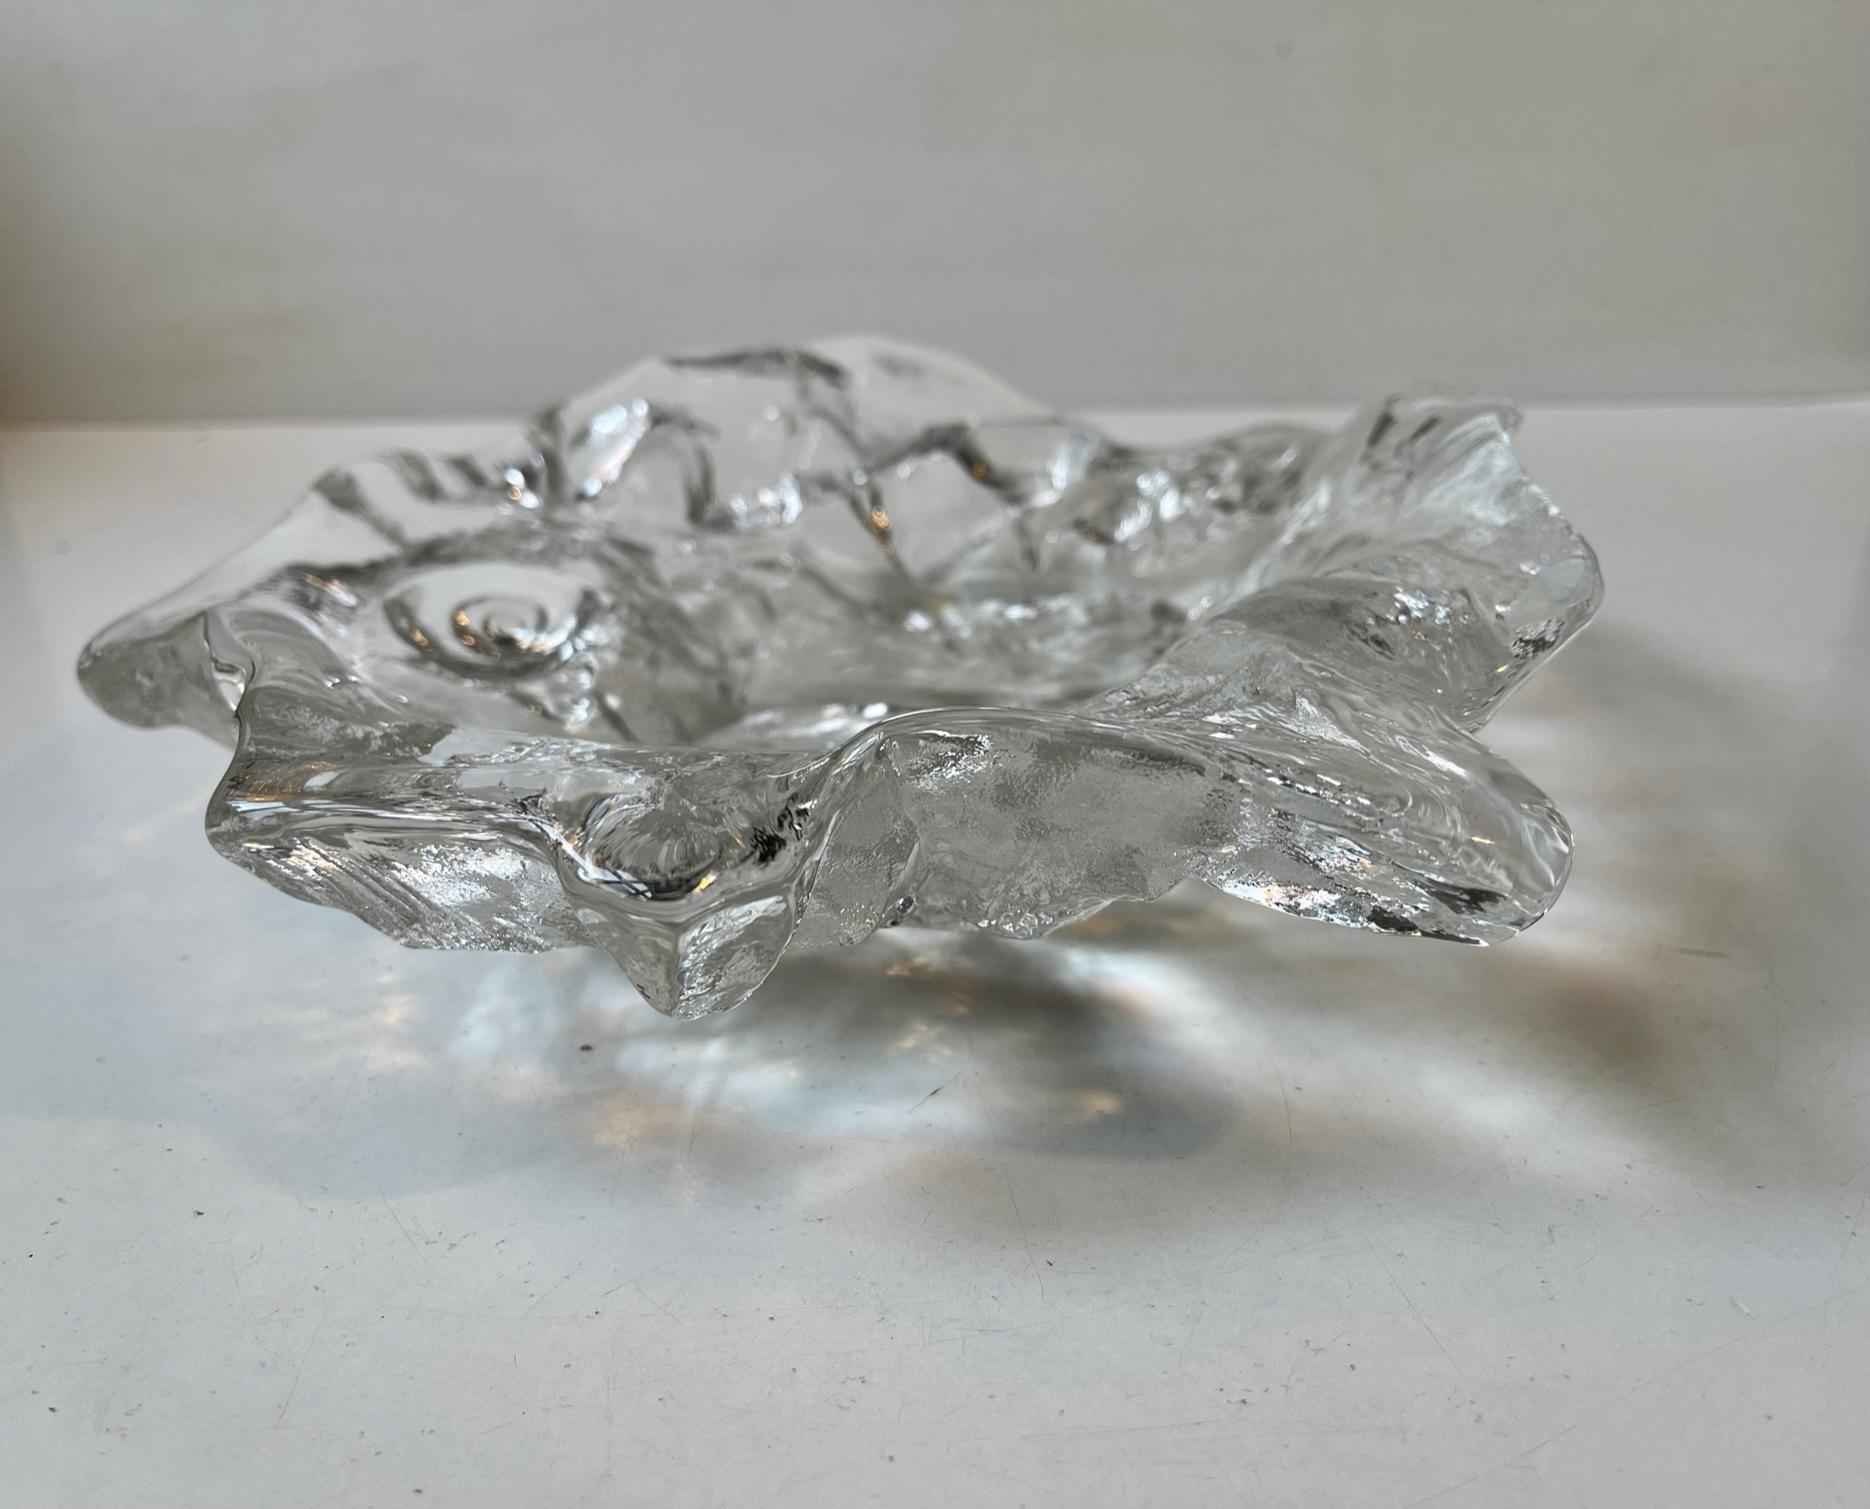 pukeberg sweden glass plate